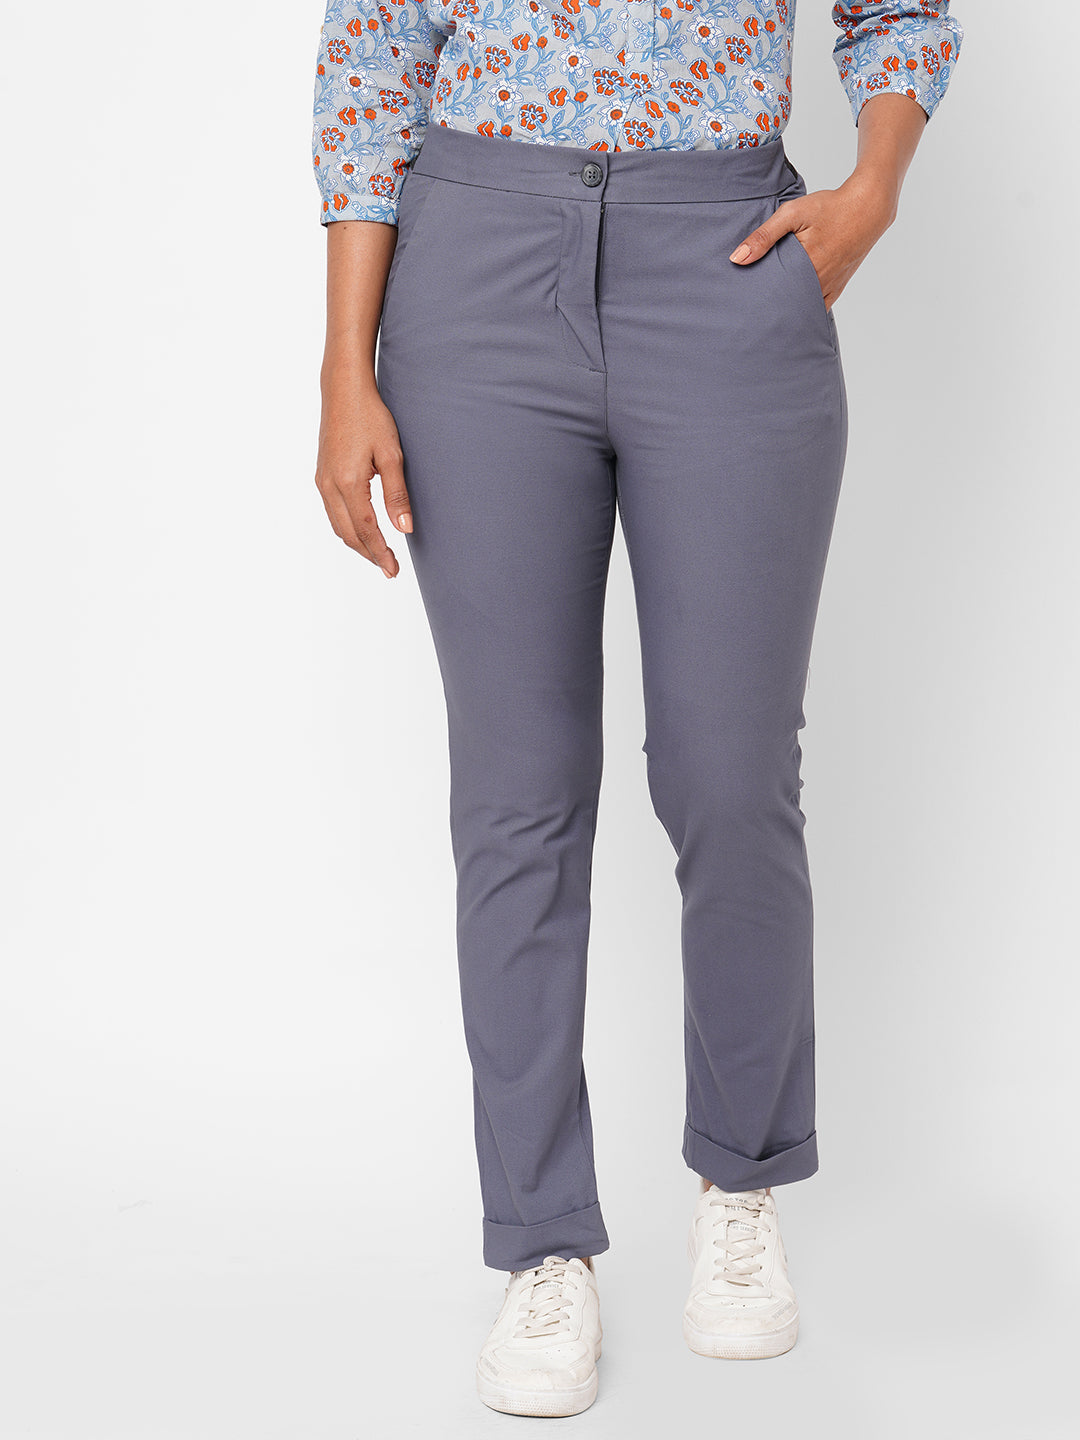 Women's Blue Cotton Lurex Slim Fit Pant